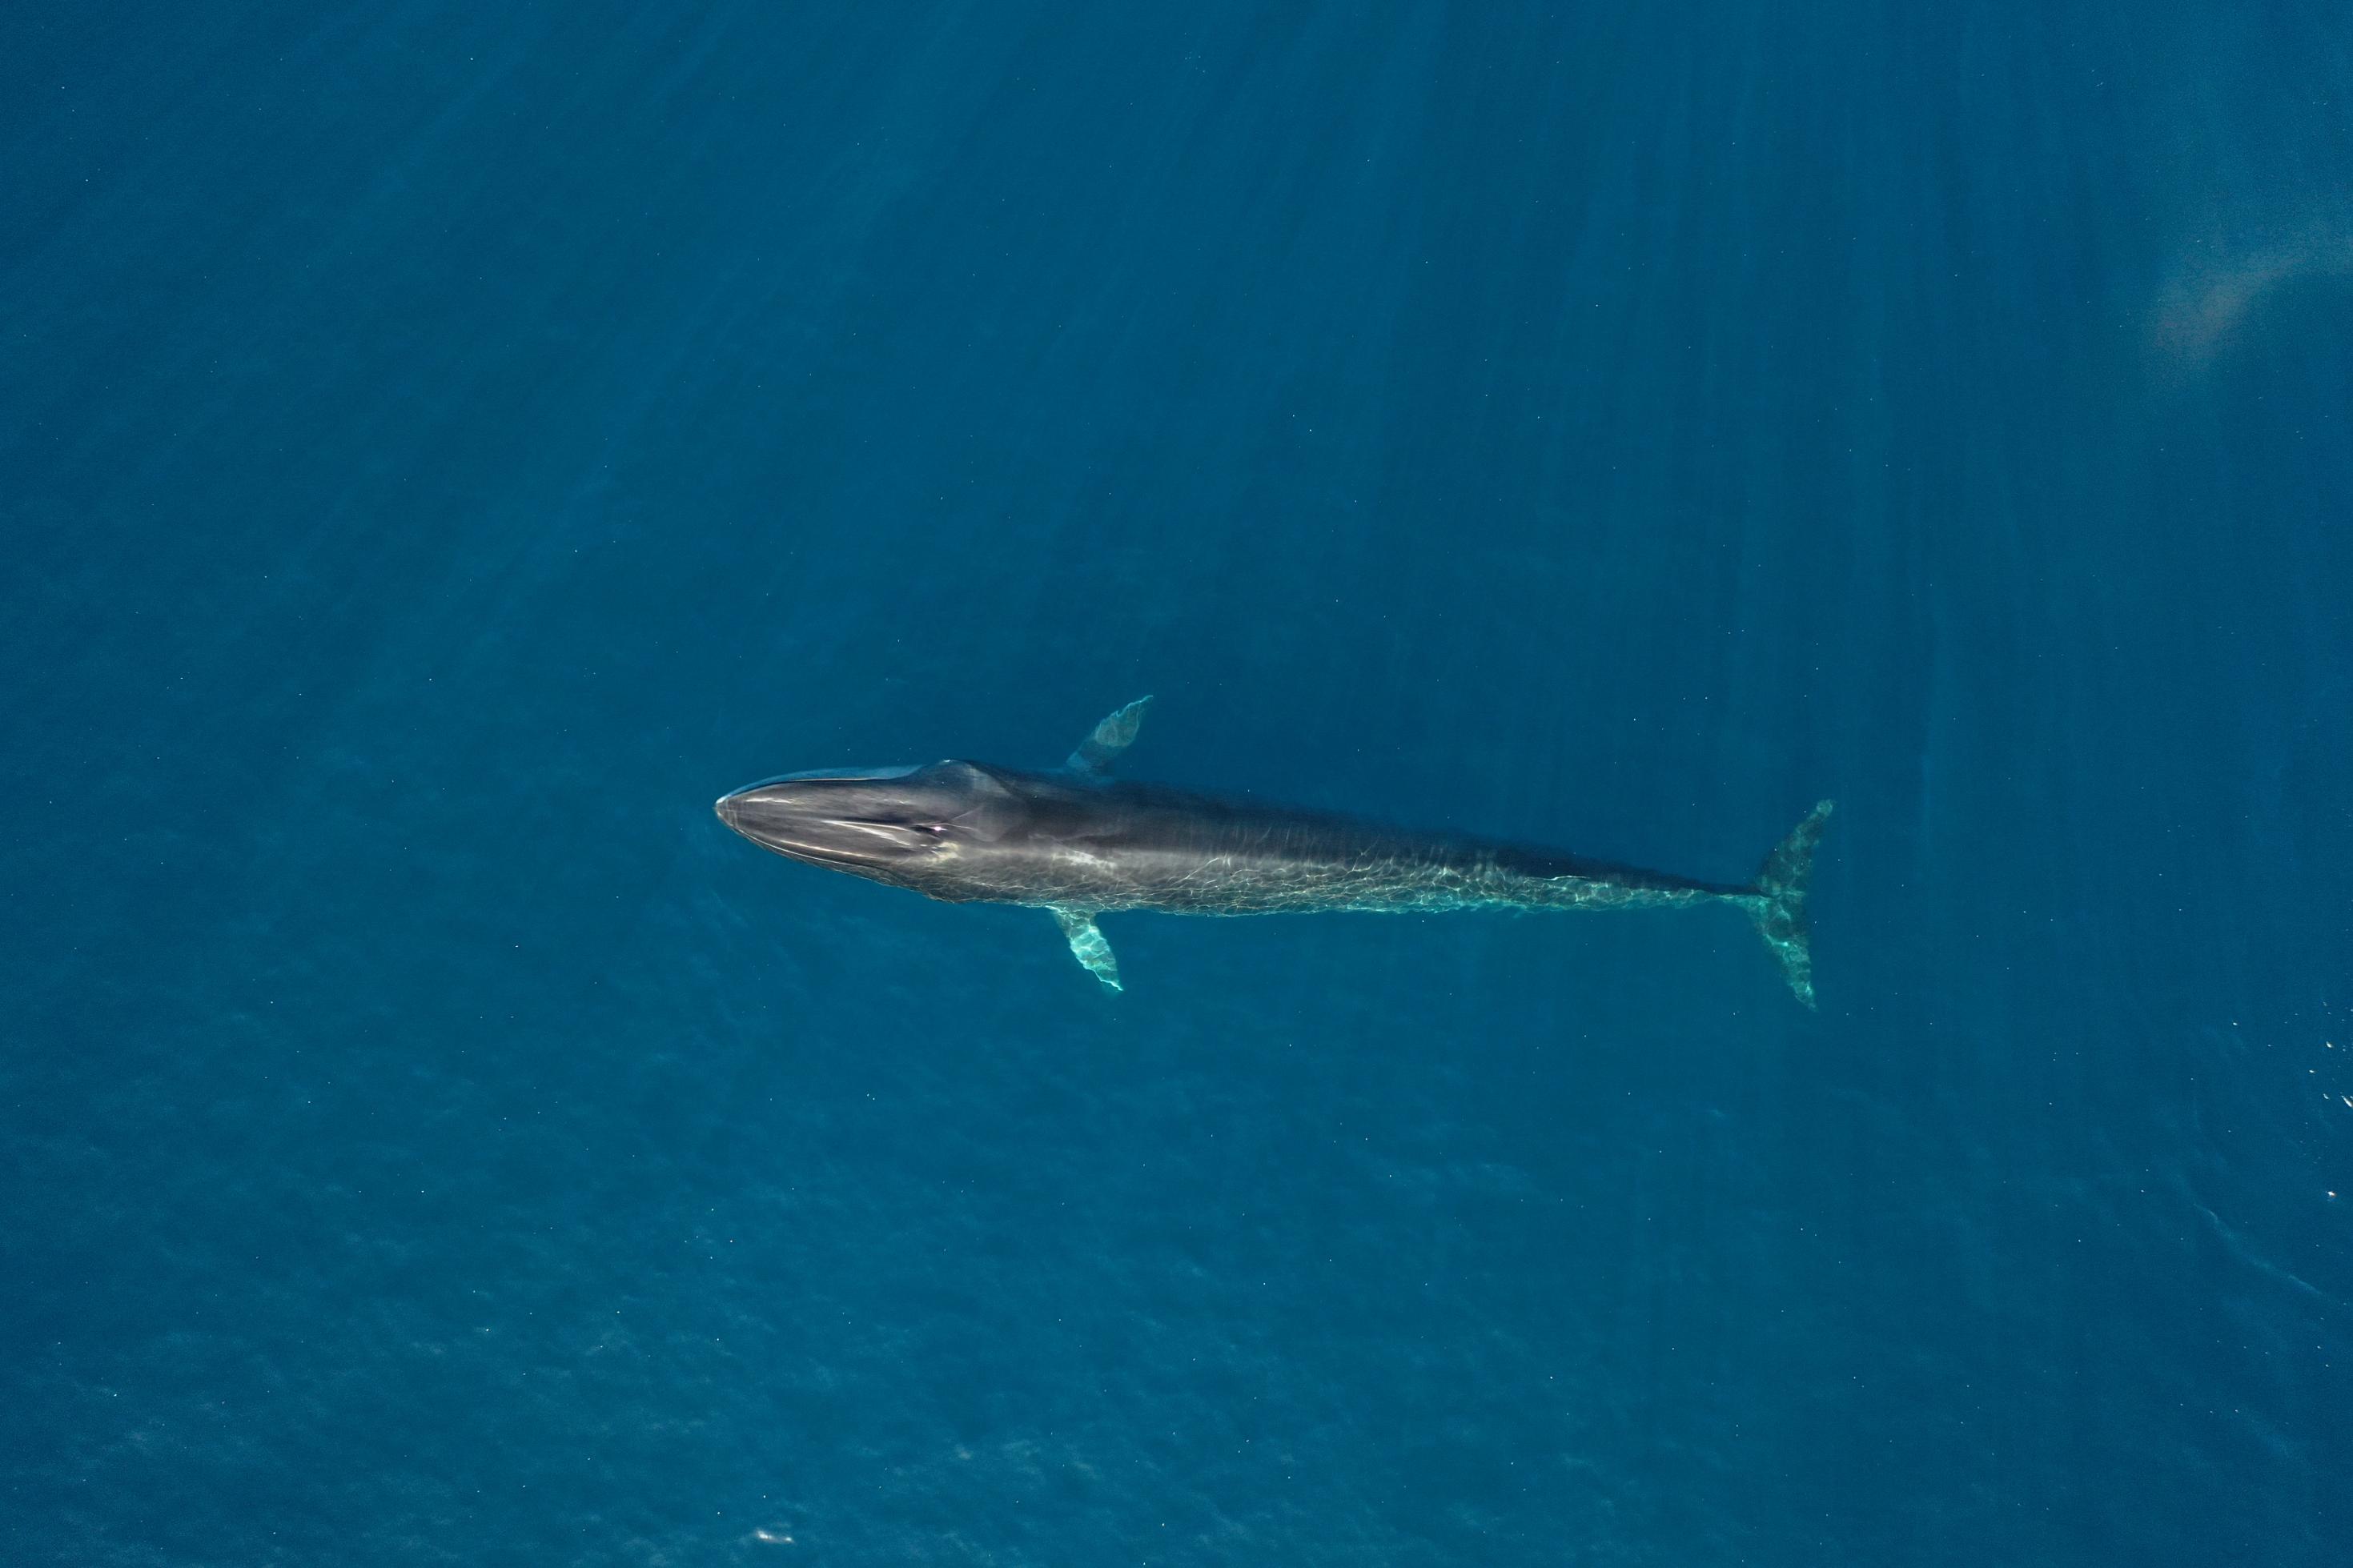 Bild zeigt einen einzelnen Finnwal, der an der Oberfläche des Mittelmeers schwimmt.